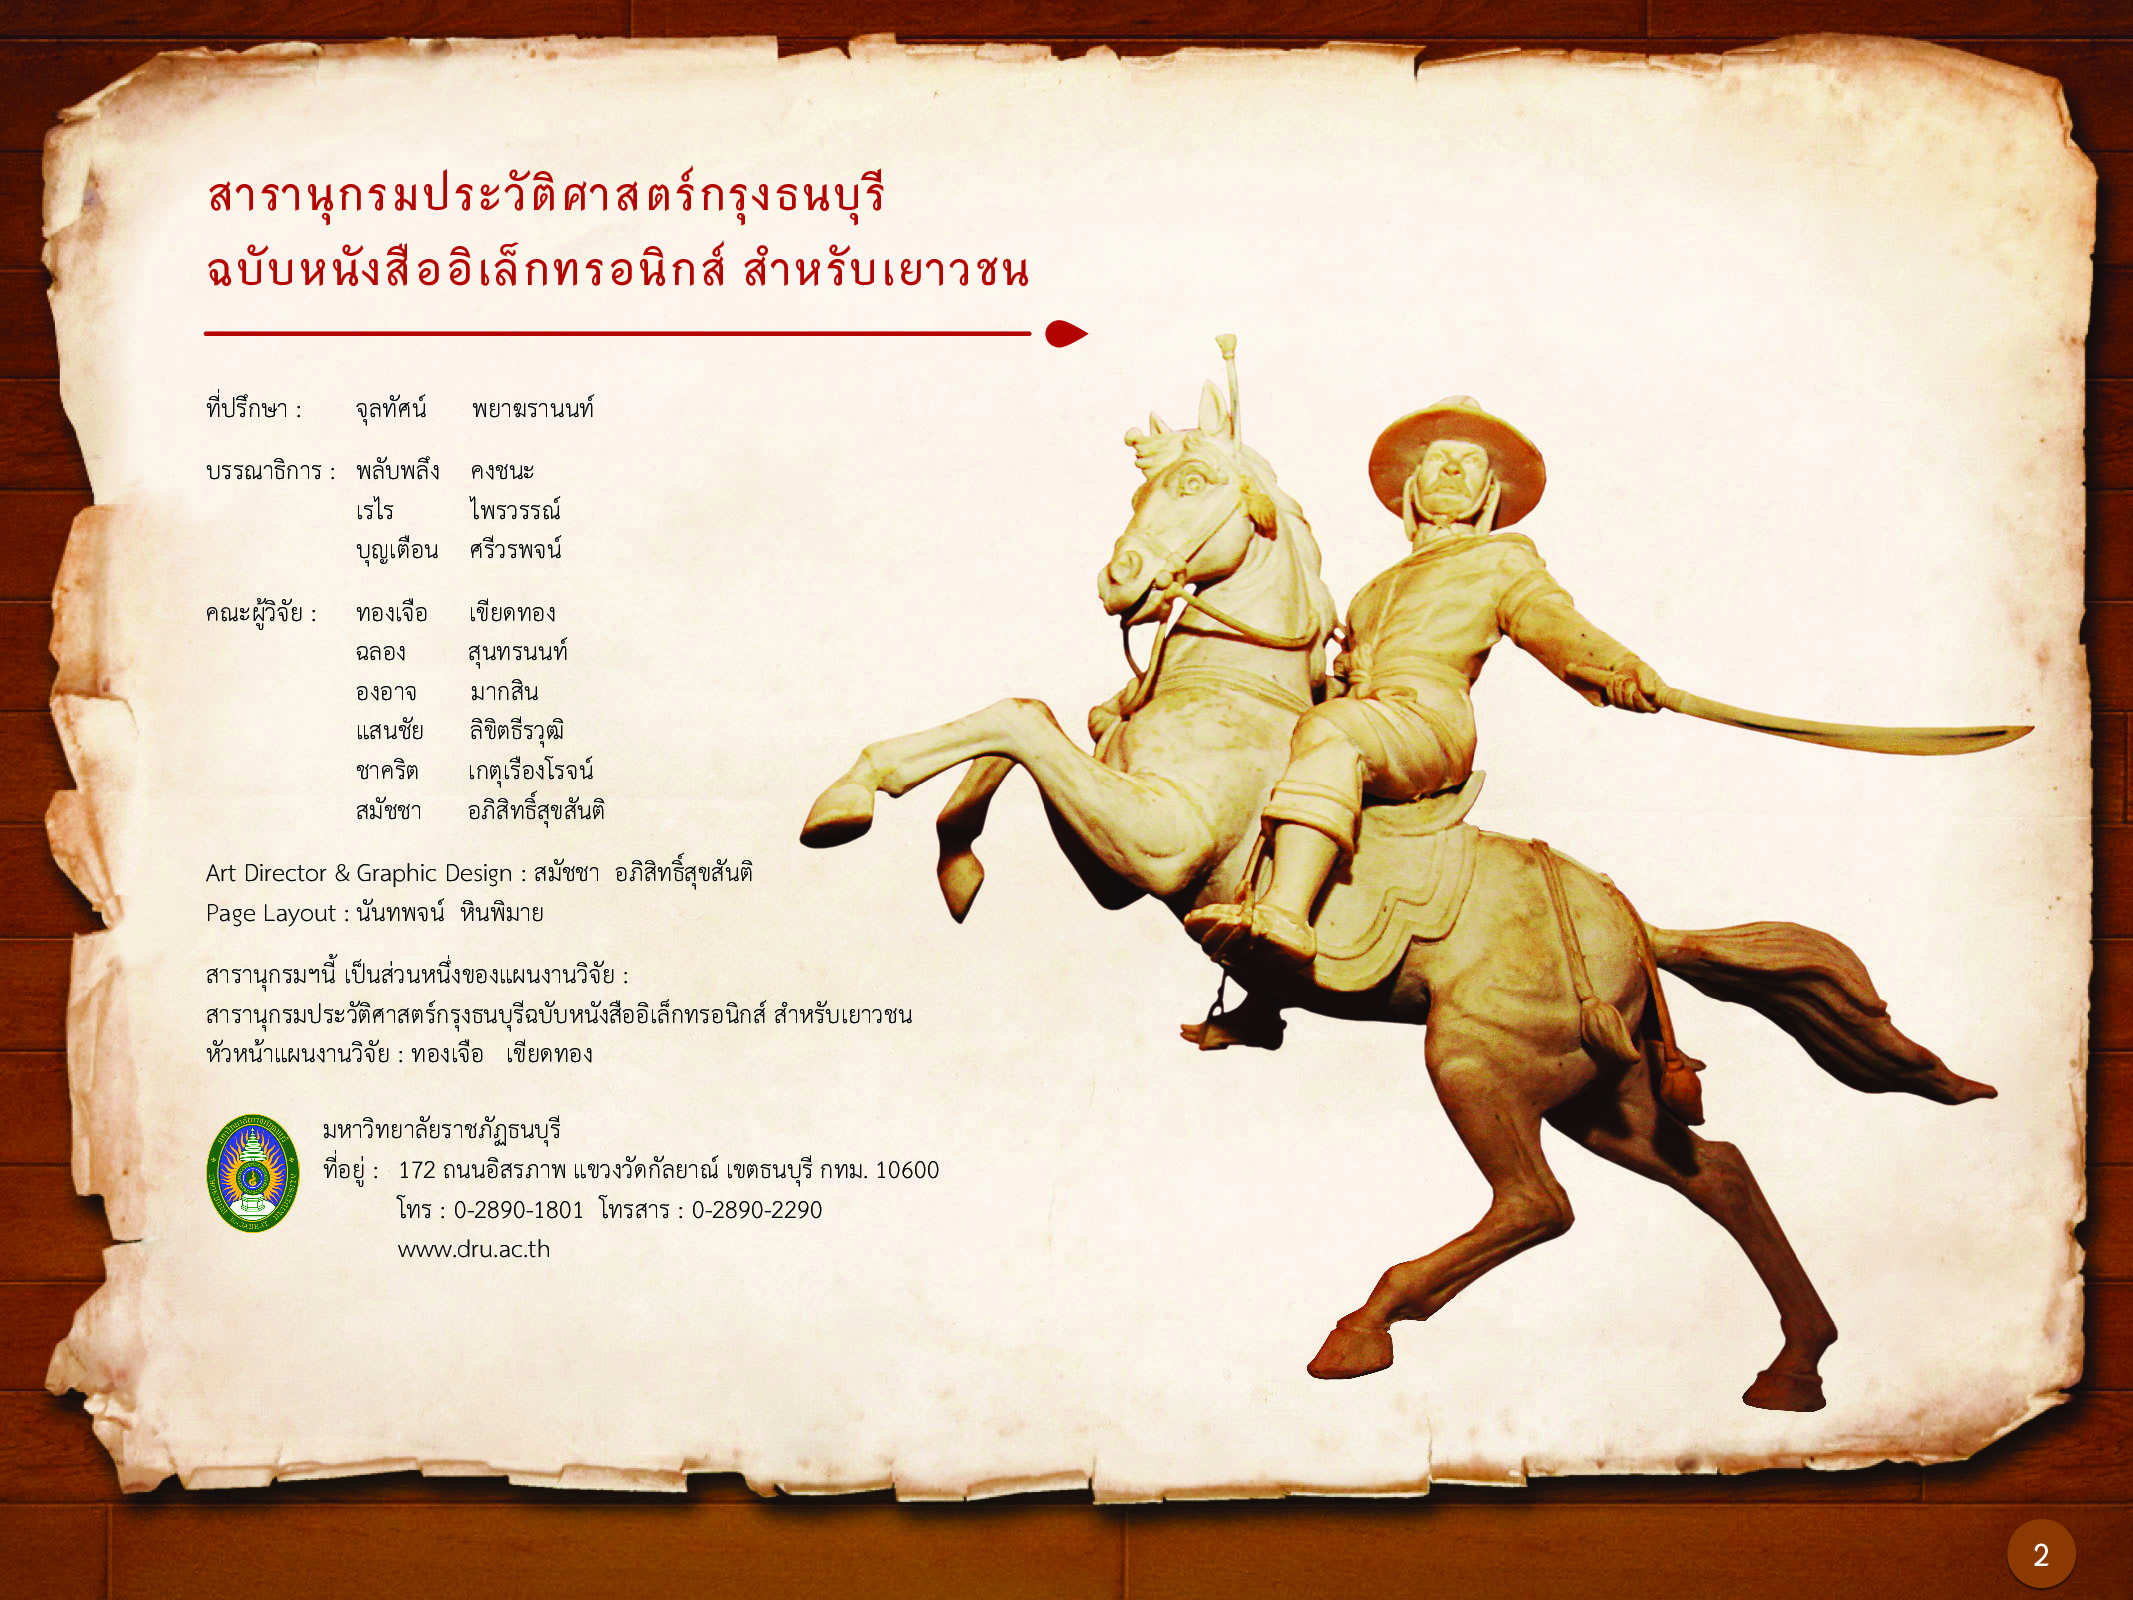 ประวัติศาสตร์กรุงธนบุรี ./images/history_dhonburi/2.jpg